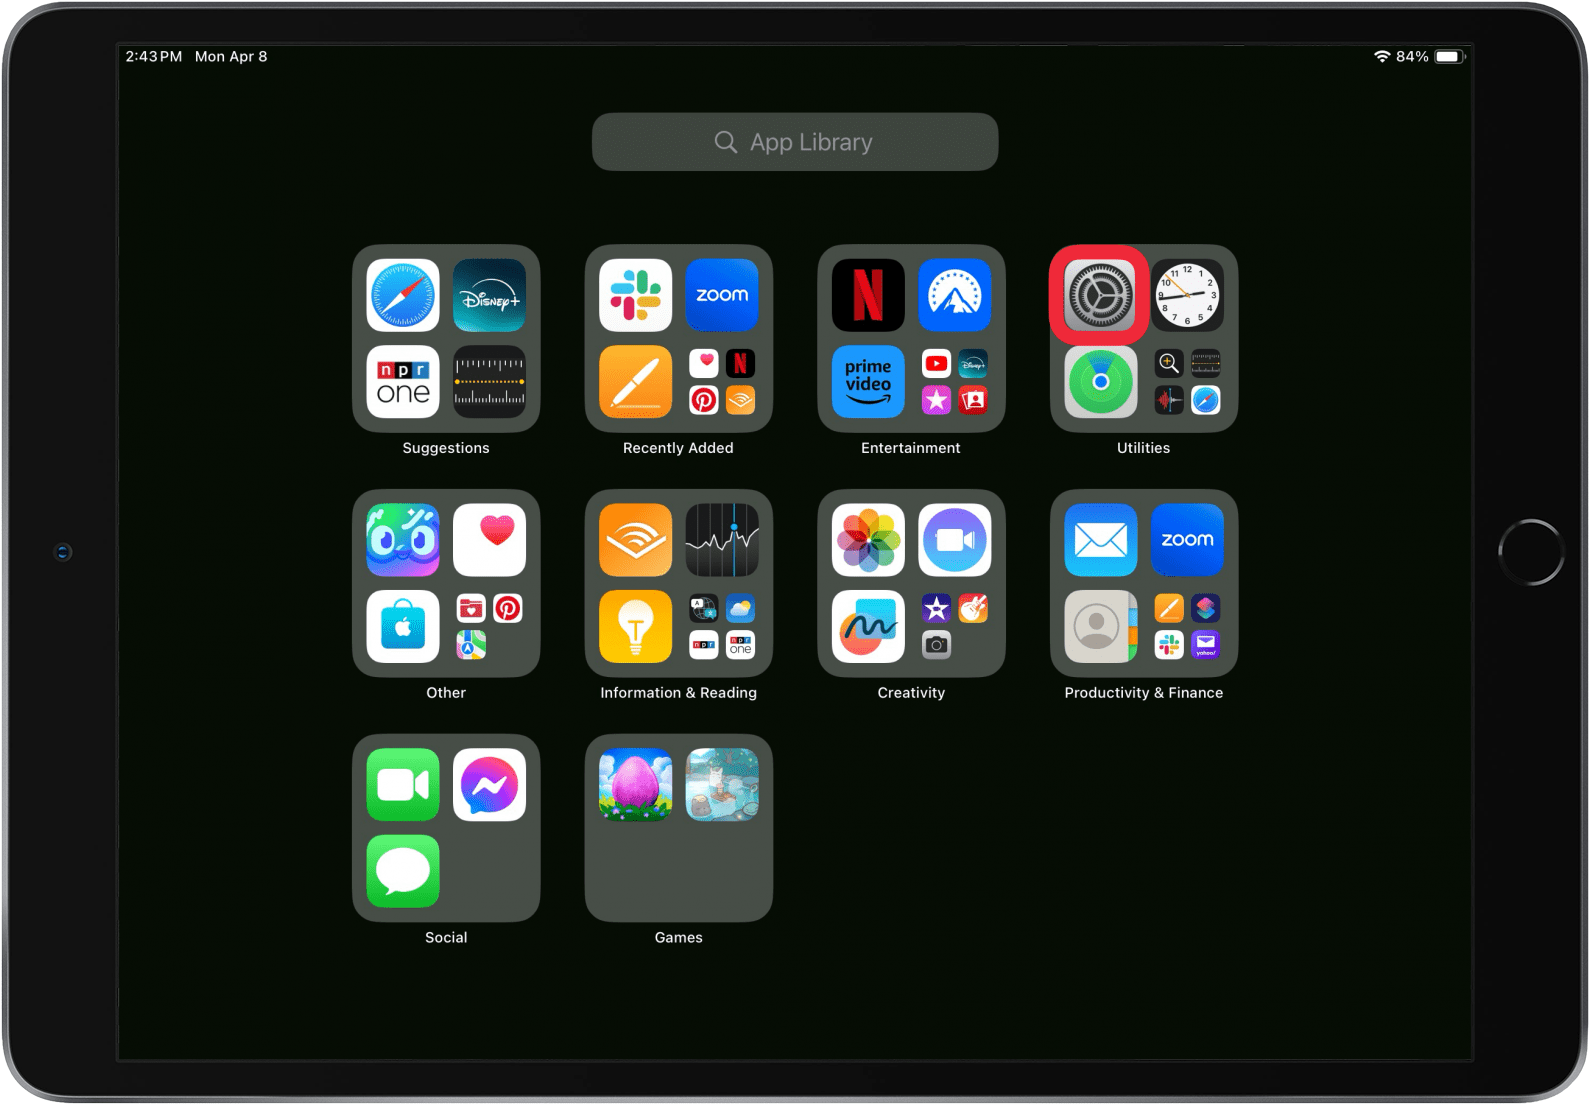 Öffnen Sie die Einstellungs-App, wenn die Home-Taste auf dem iPad nicht funktioniert